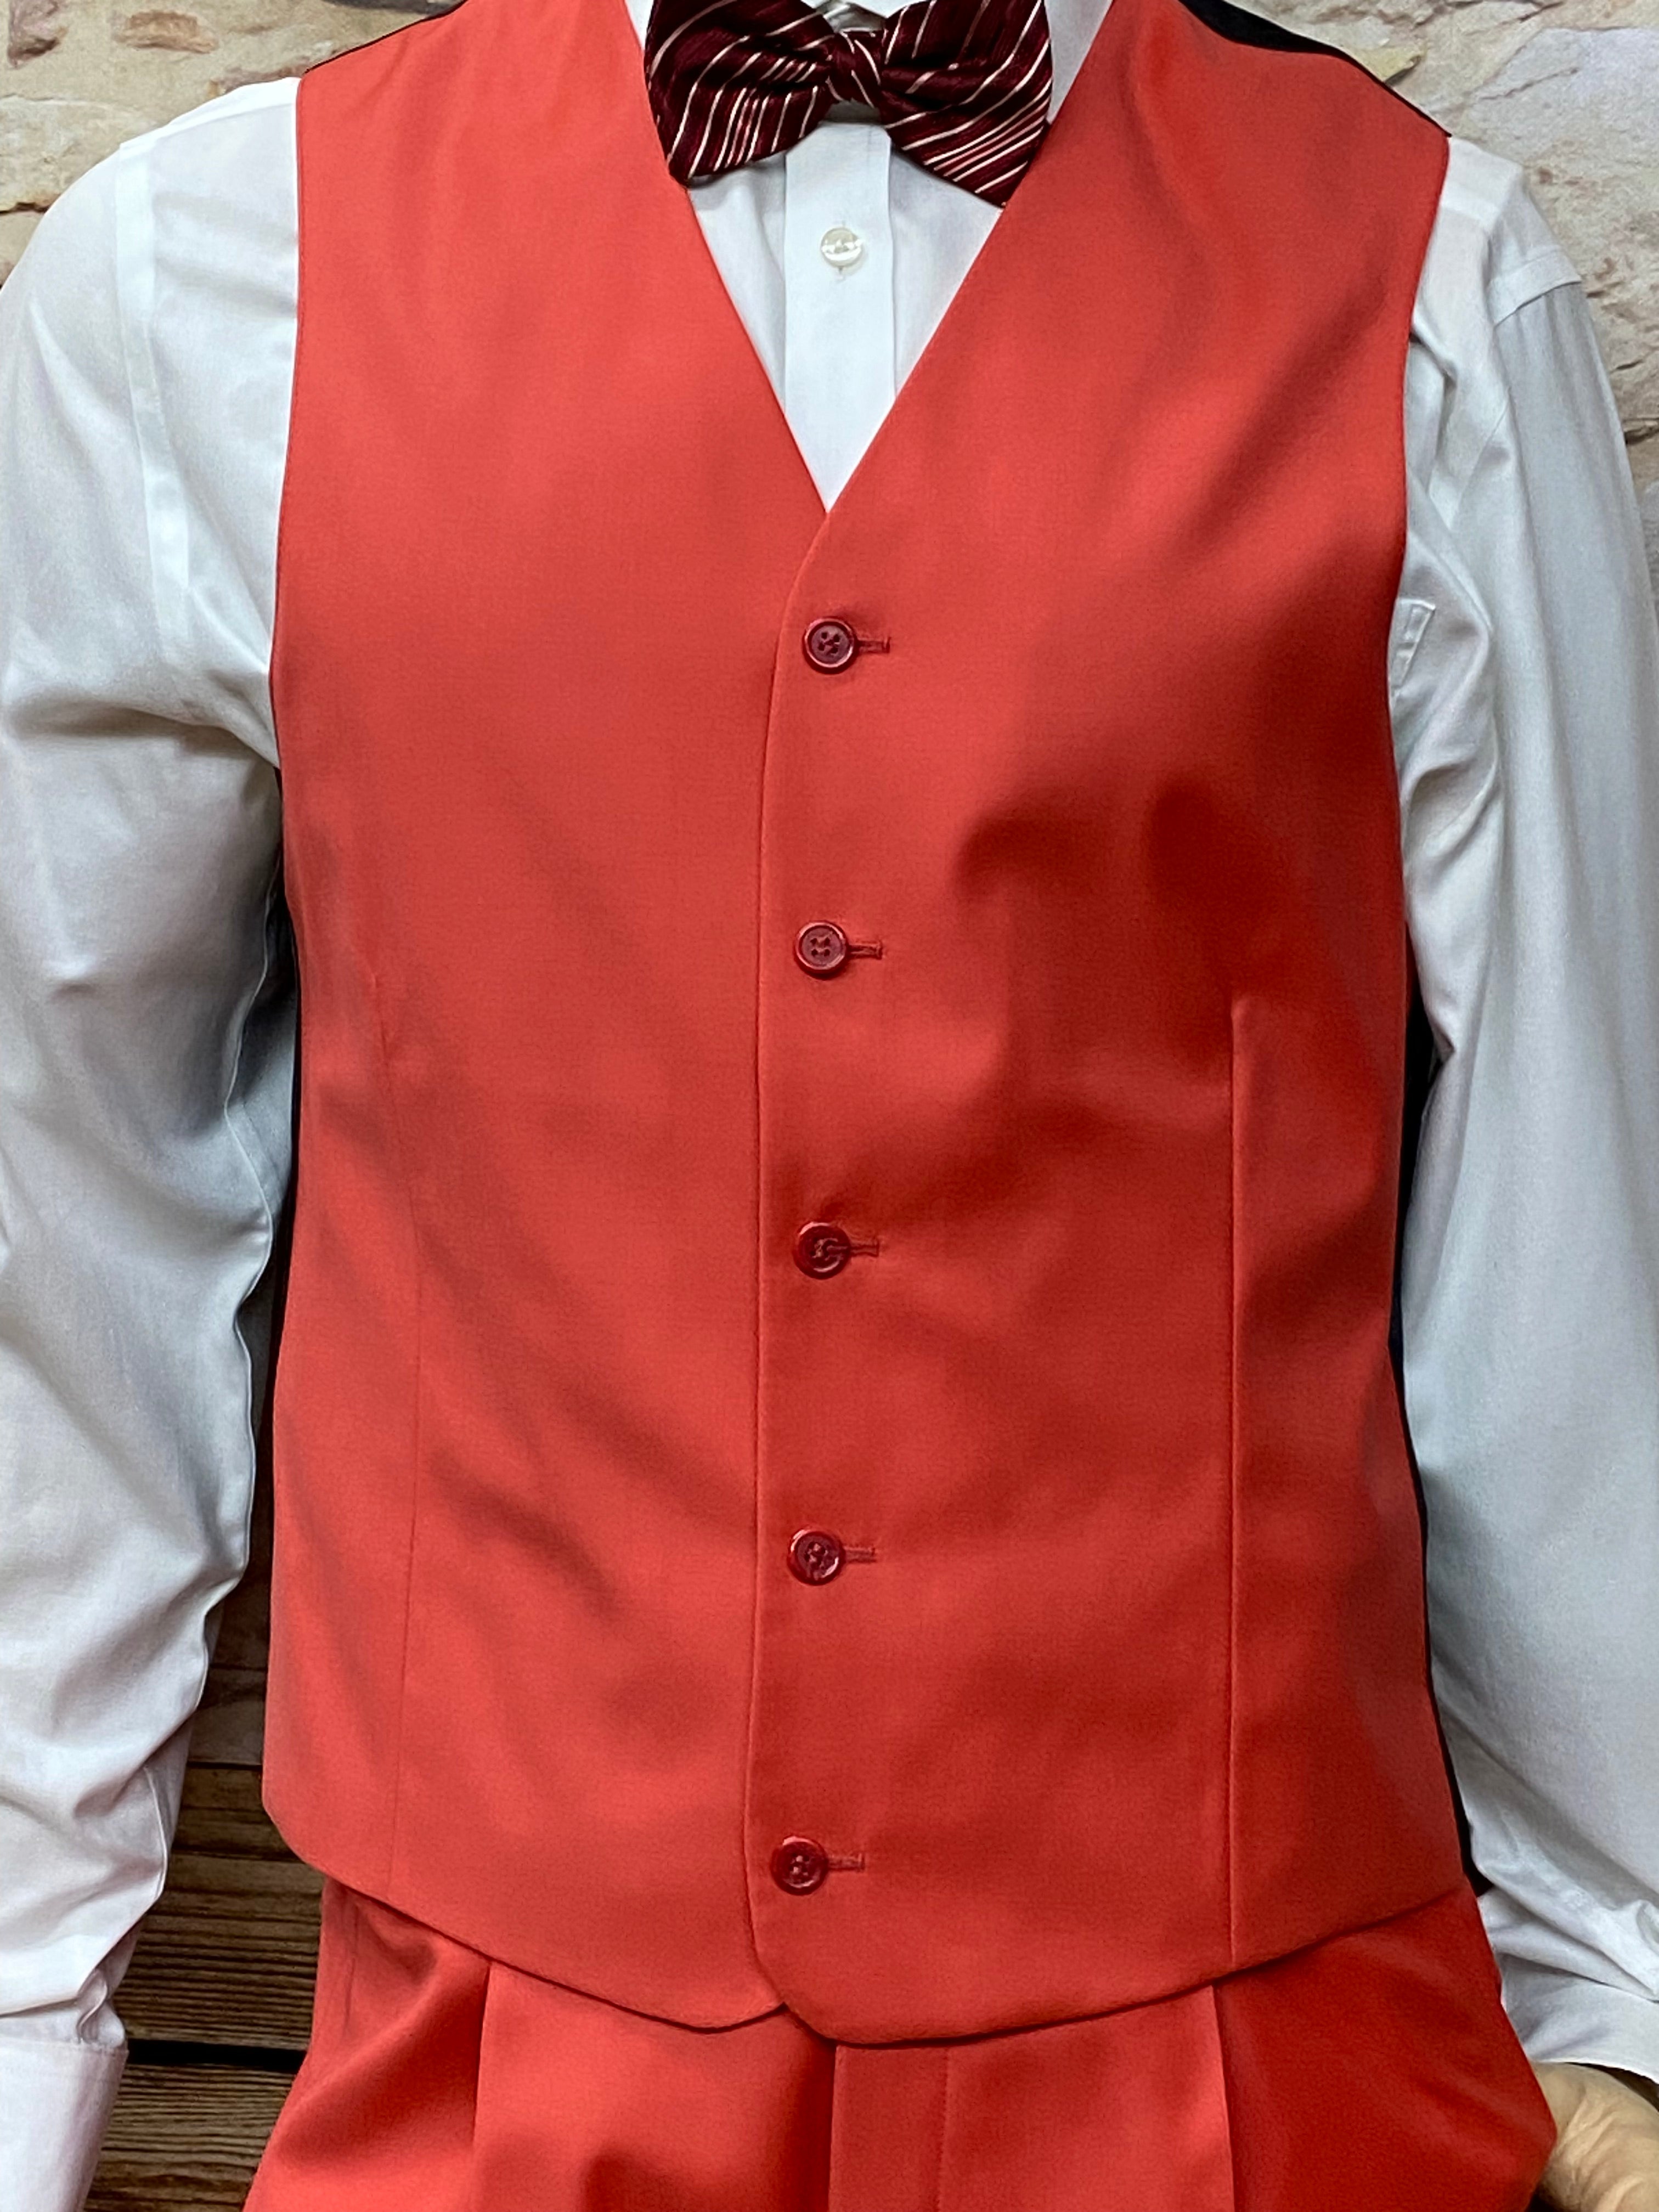 Roter 3teiliger Anzug, Weste, Hose, Fliege Gr.48